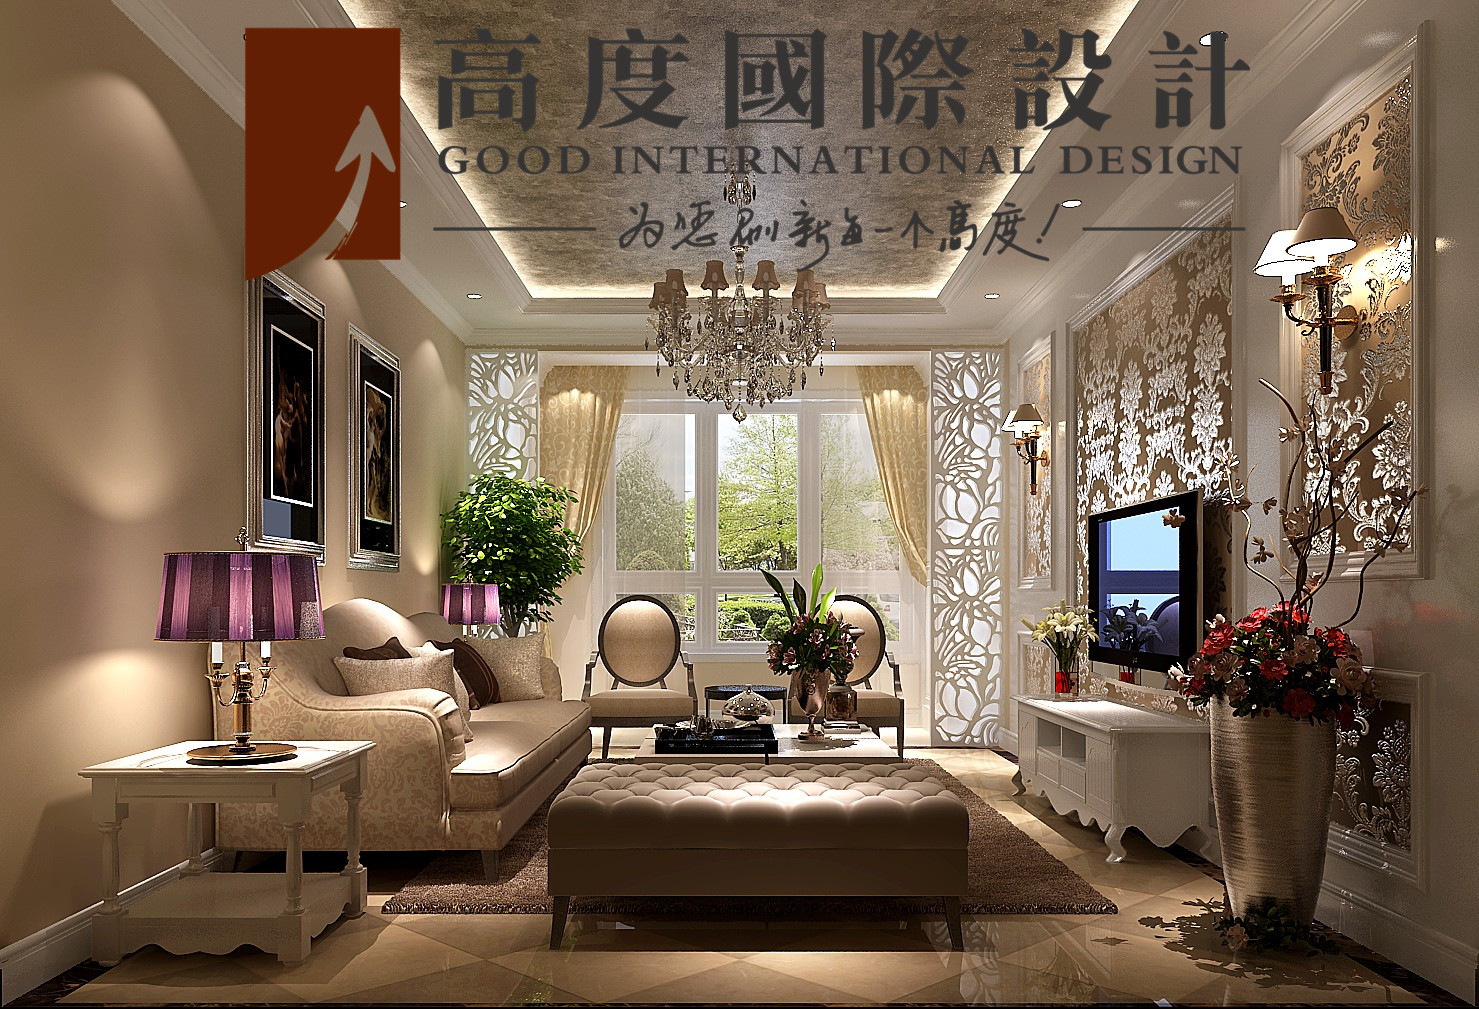 二居 美式 田园 客厅图片来自高度国际设计严振宇在K2百合湾两居室美式田园风格的分享